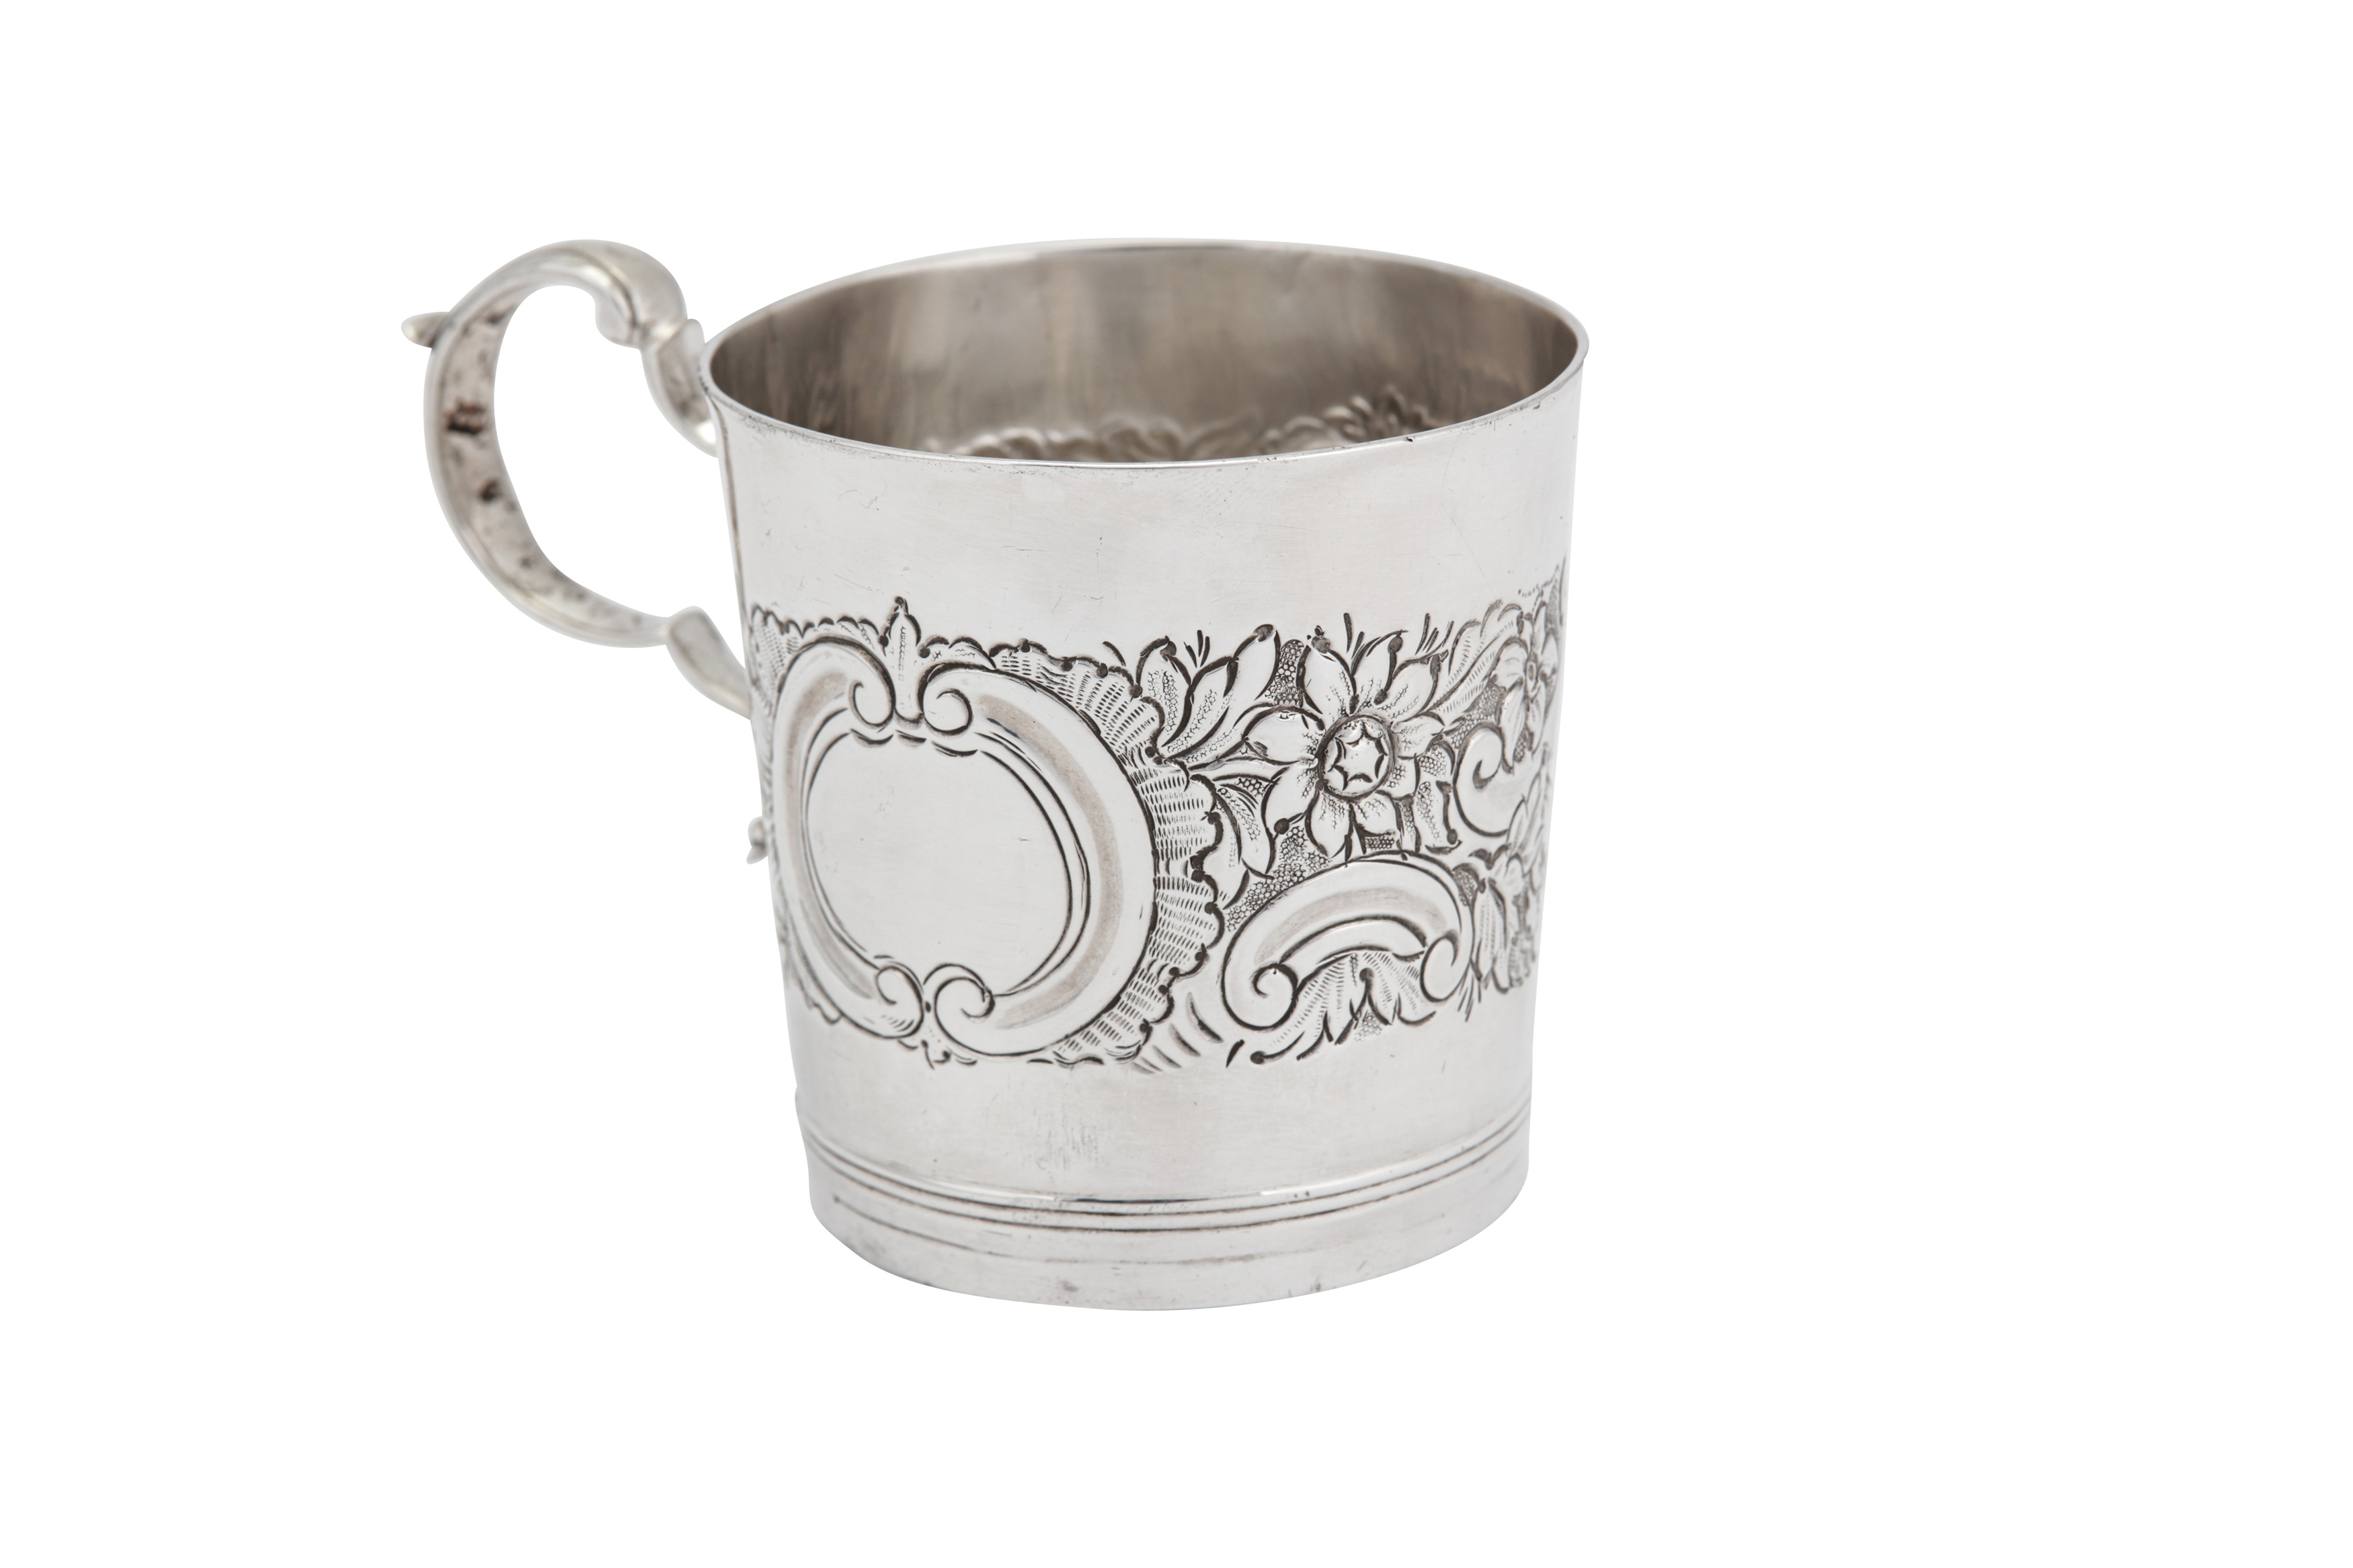 A George III Irish sterling silver mug, Dublin circa 1780 by IL in a serrated punch